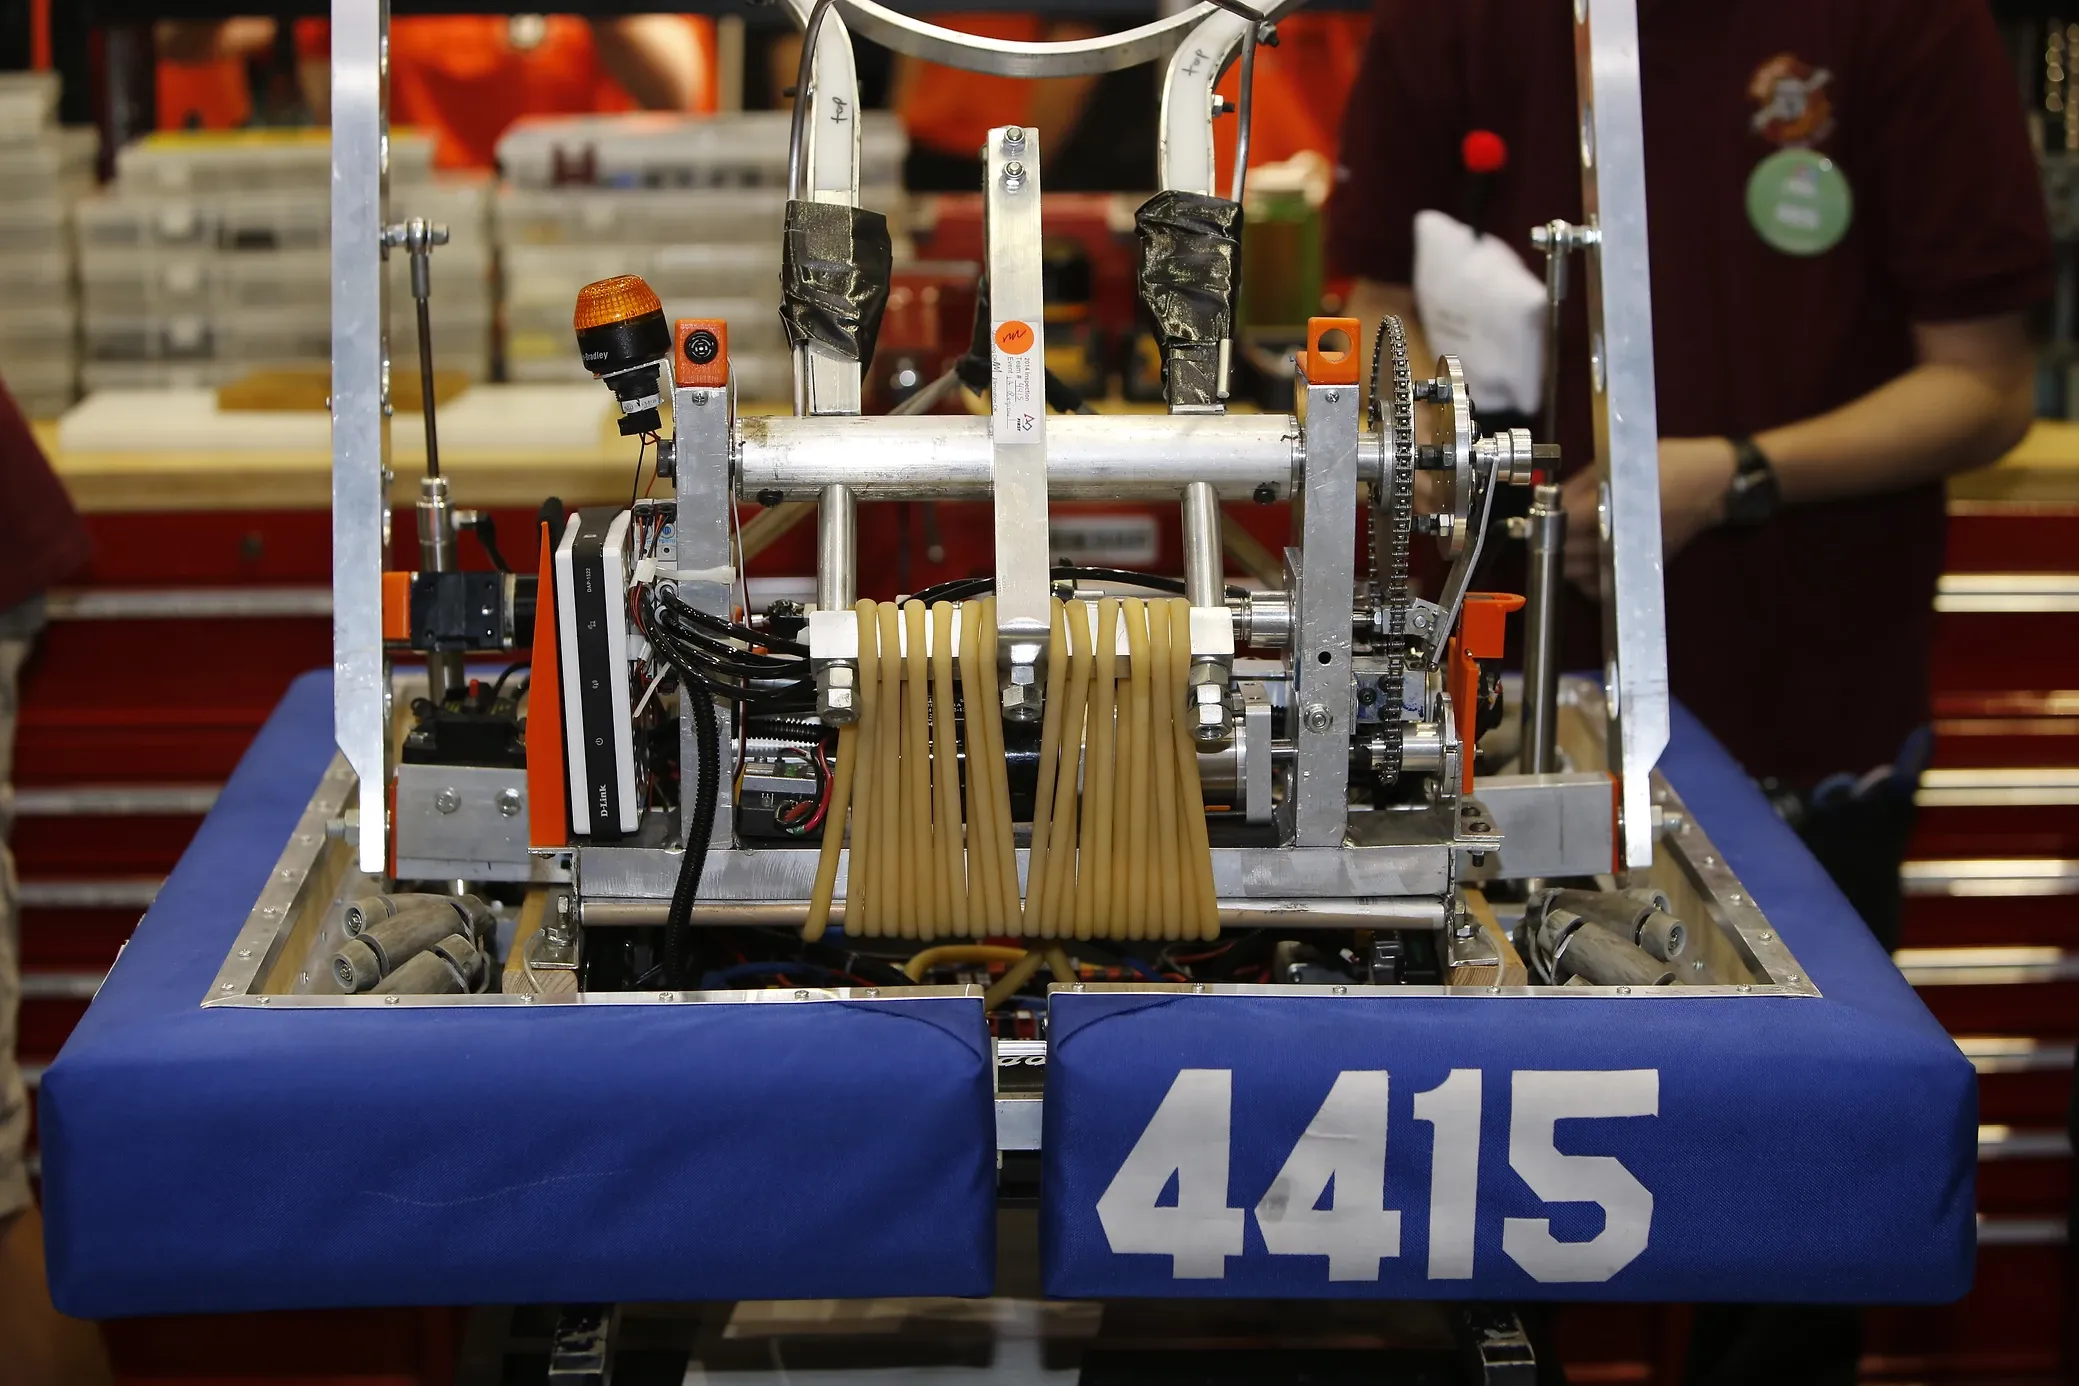 Team 4415 2014 Robot Closeup